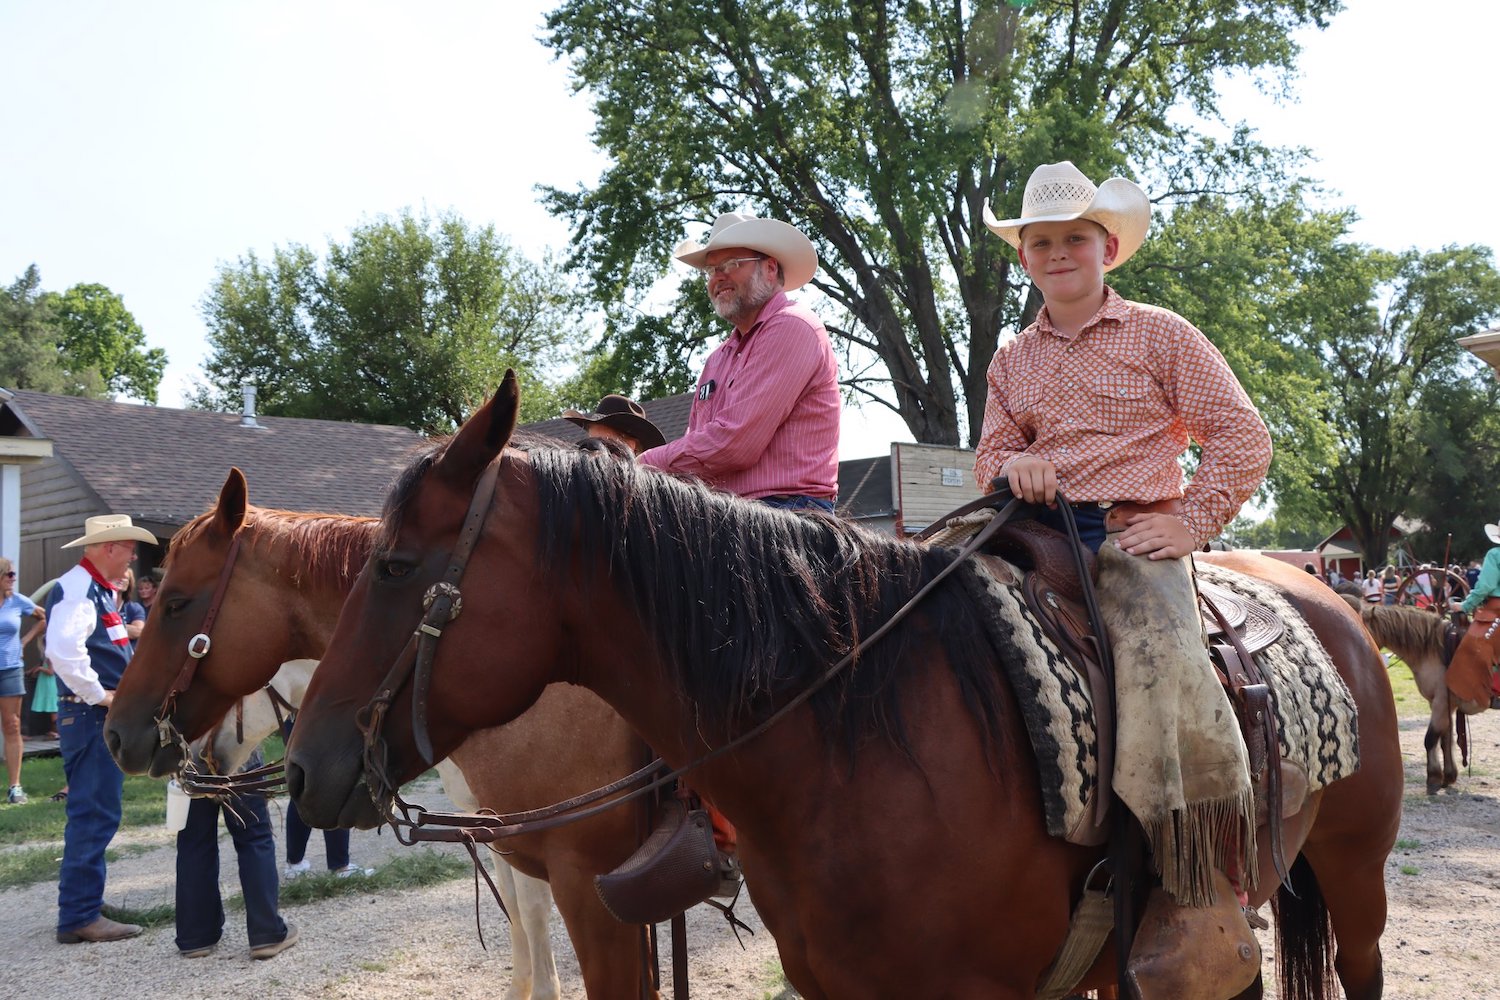 Volunteers on horseback during cattle drive at Old Abilene Town in Abilene, Kansas